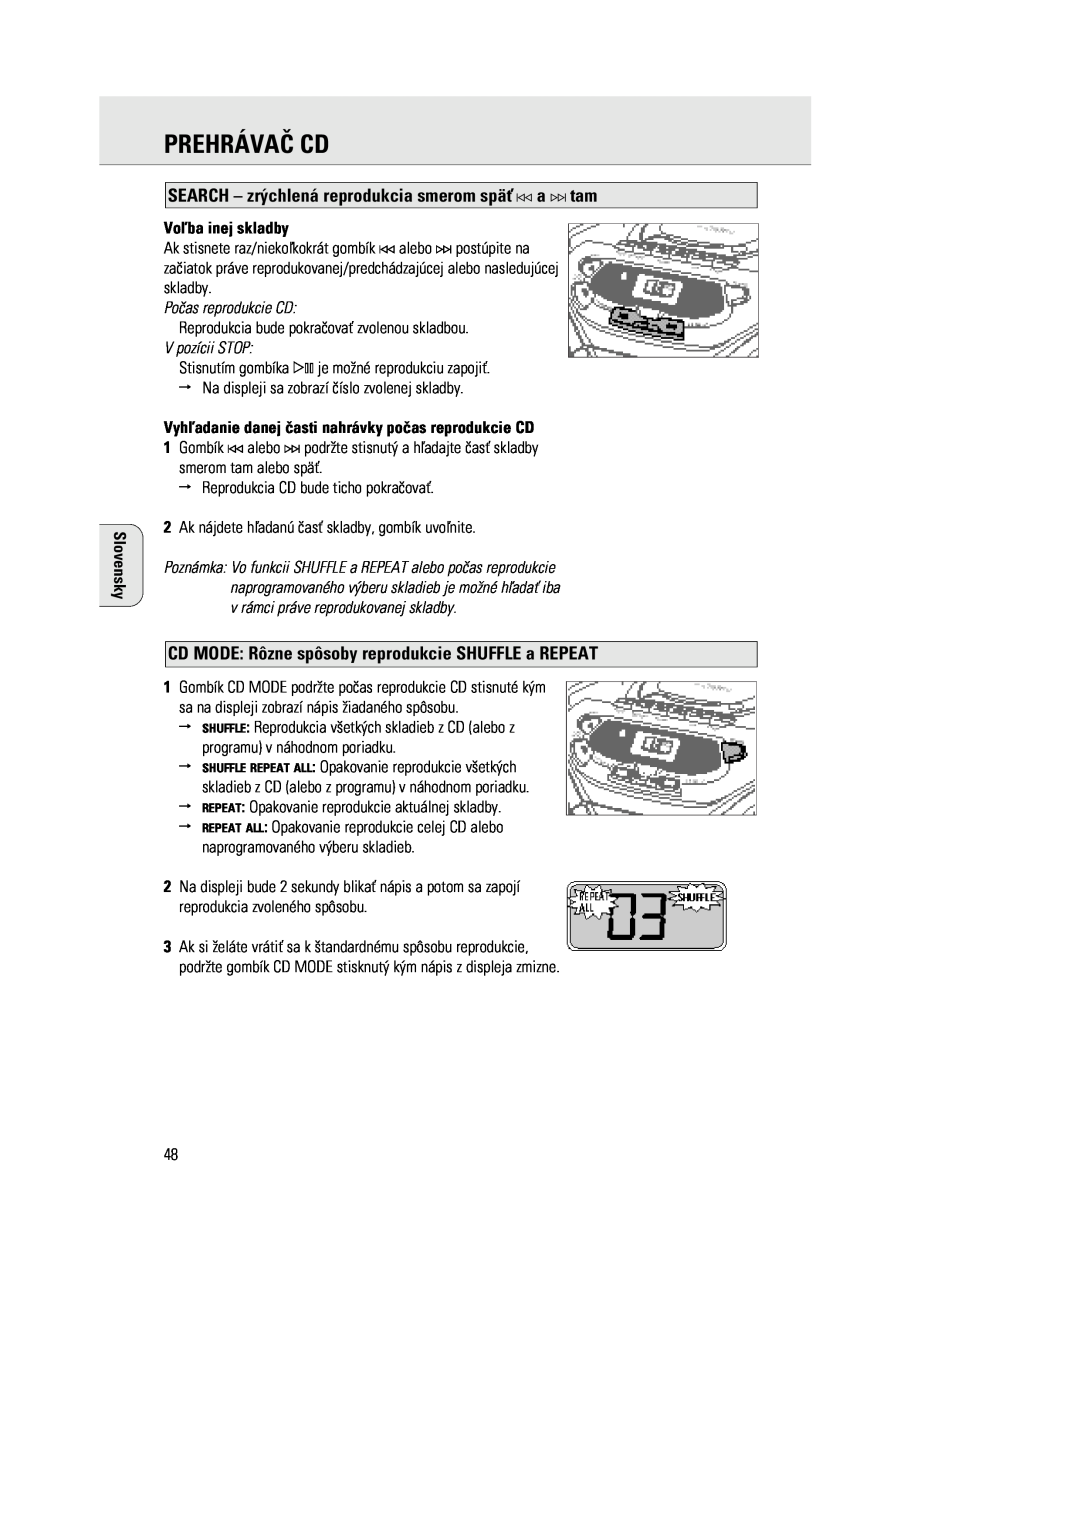 Philips 1030 manual SEARCH Ð zr´chlen‡ reprodukcia smerom spŠ a ¤ tam, CD MODE Rzne spsoby reprodukcie SHUFFLE a REPEAT 